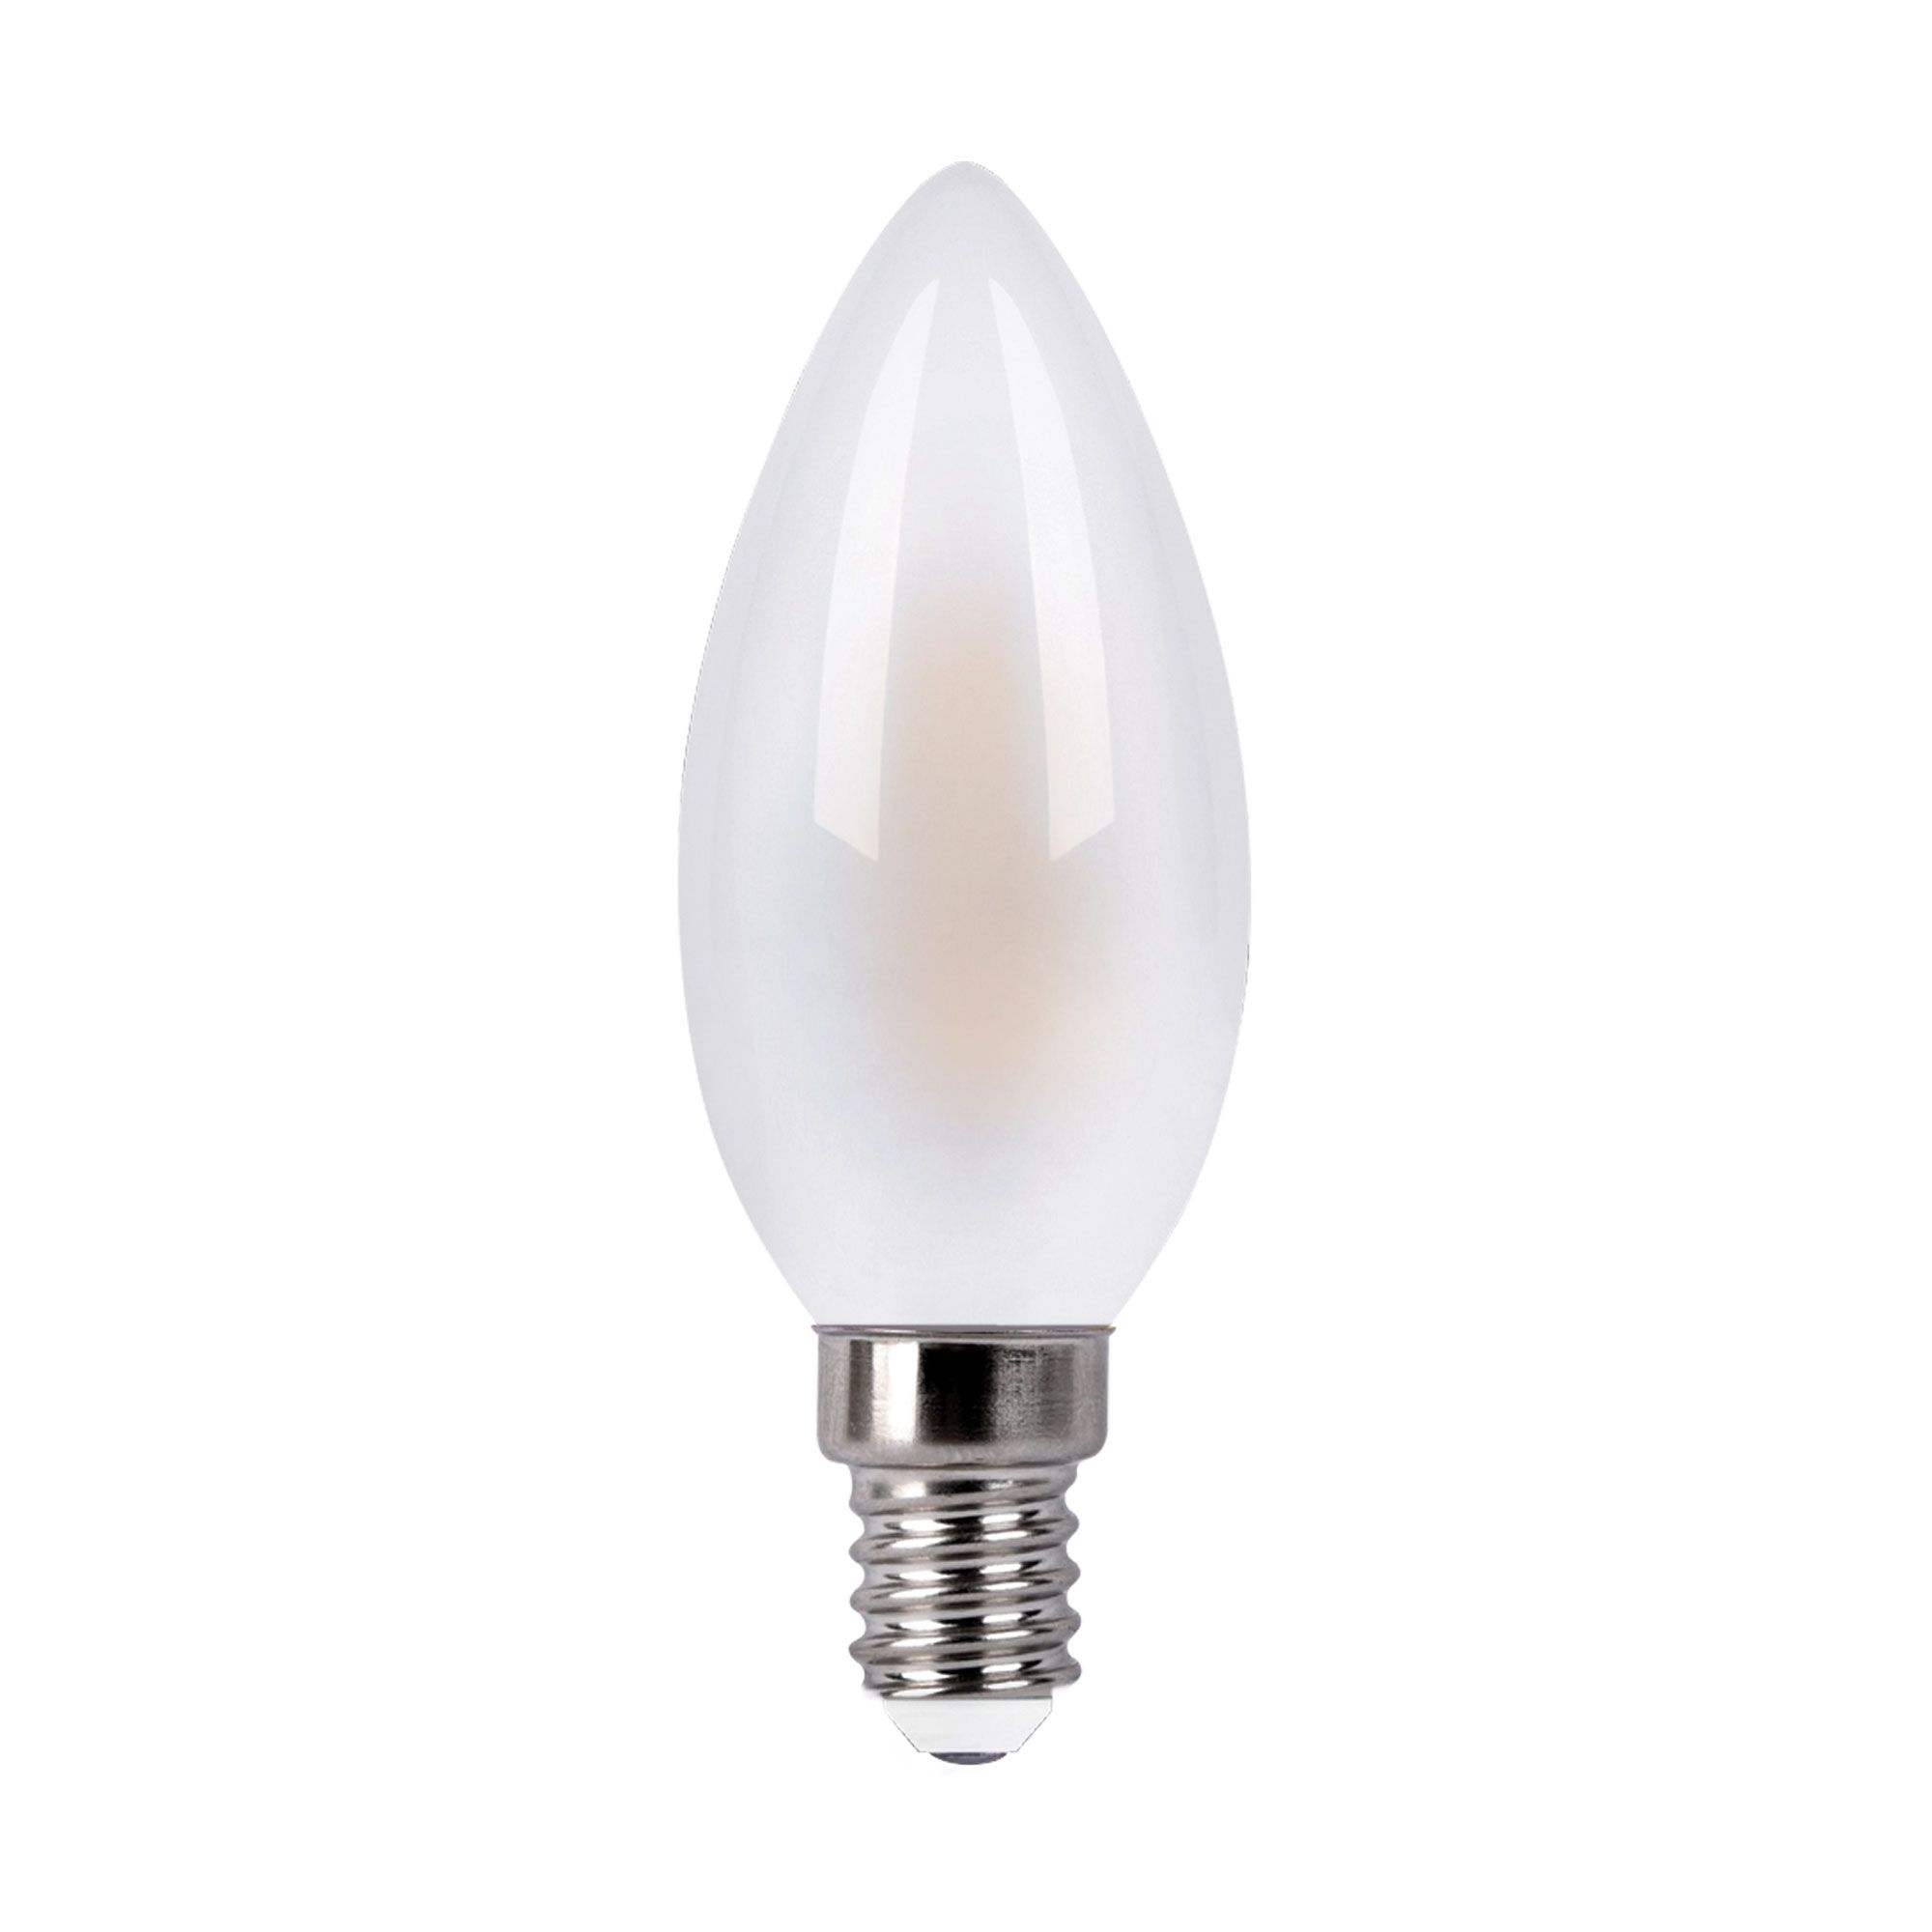 Филаментная светодиодная лампа "Свеча" С35 7W 4200K E14 BLE1410. Фото 2